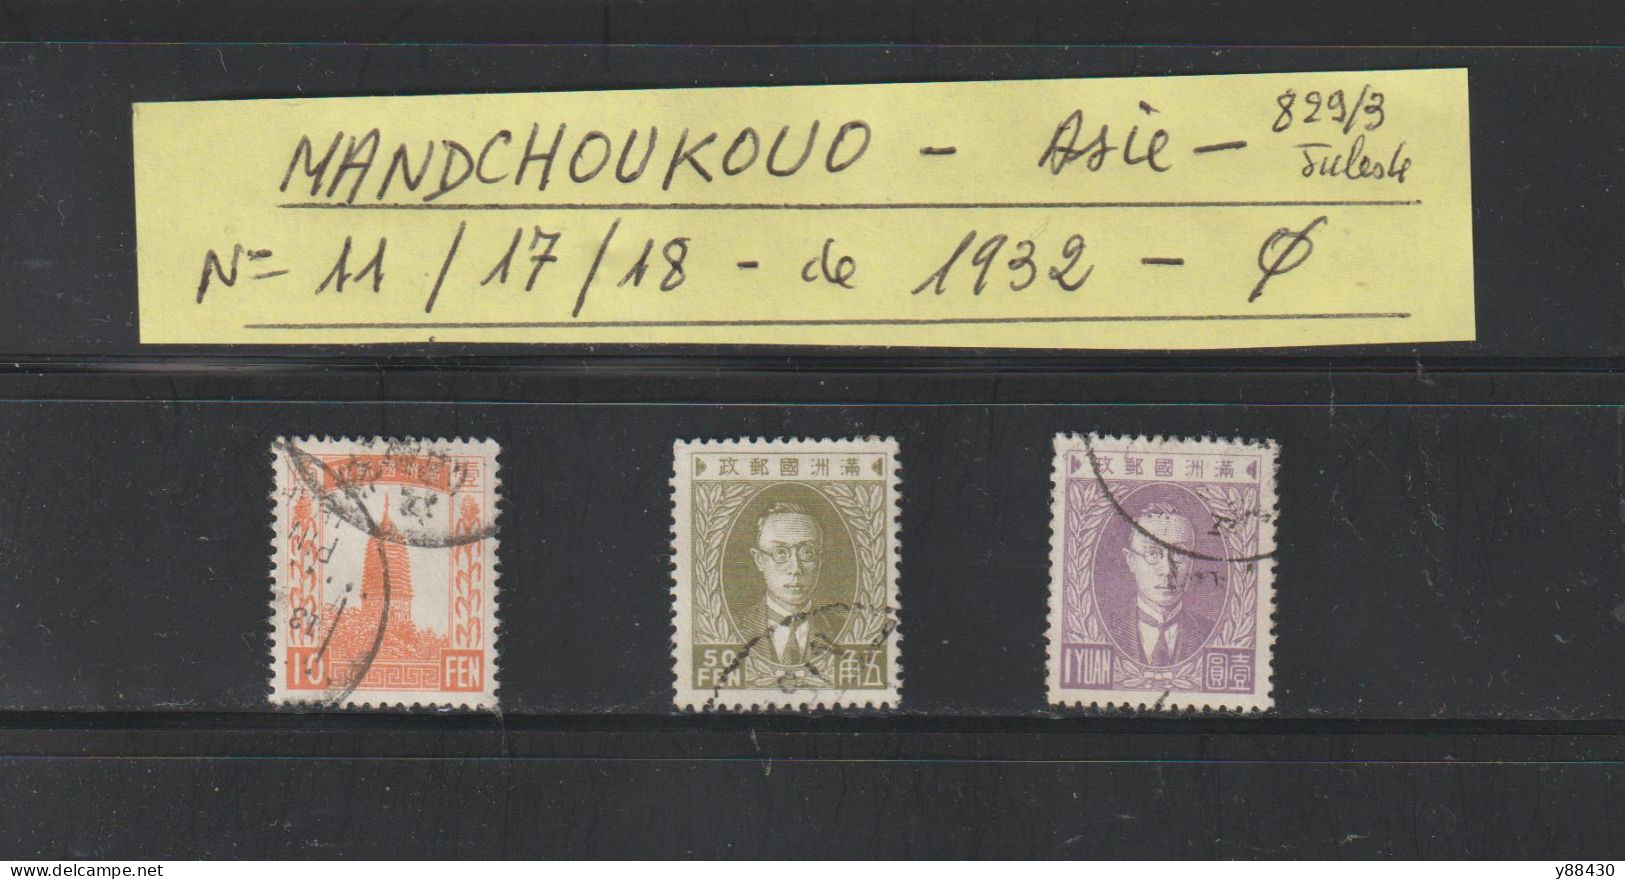 MANDCHOUKOUO - ASIE - Occupation JAPONAISE - N° 11 / 17 / 18  De 1932 - 3 Timbres Oblitérés  - 2 Scan - 1932-45  Mandschurei (Mandschukuo)